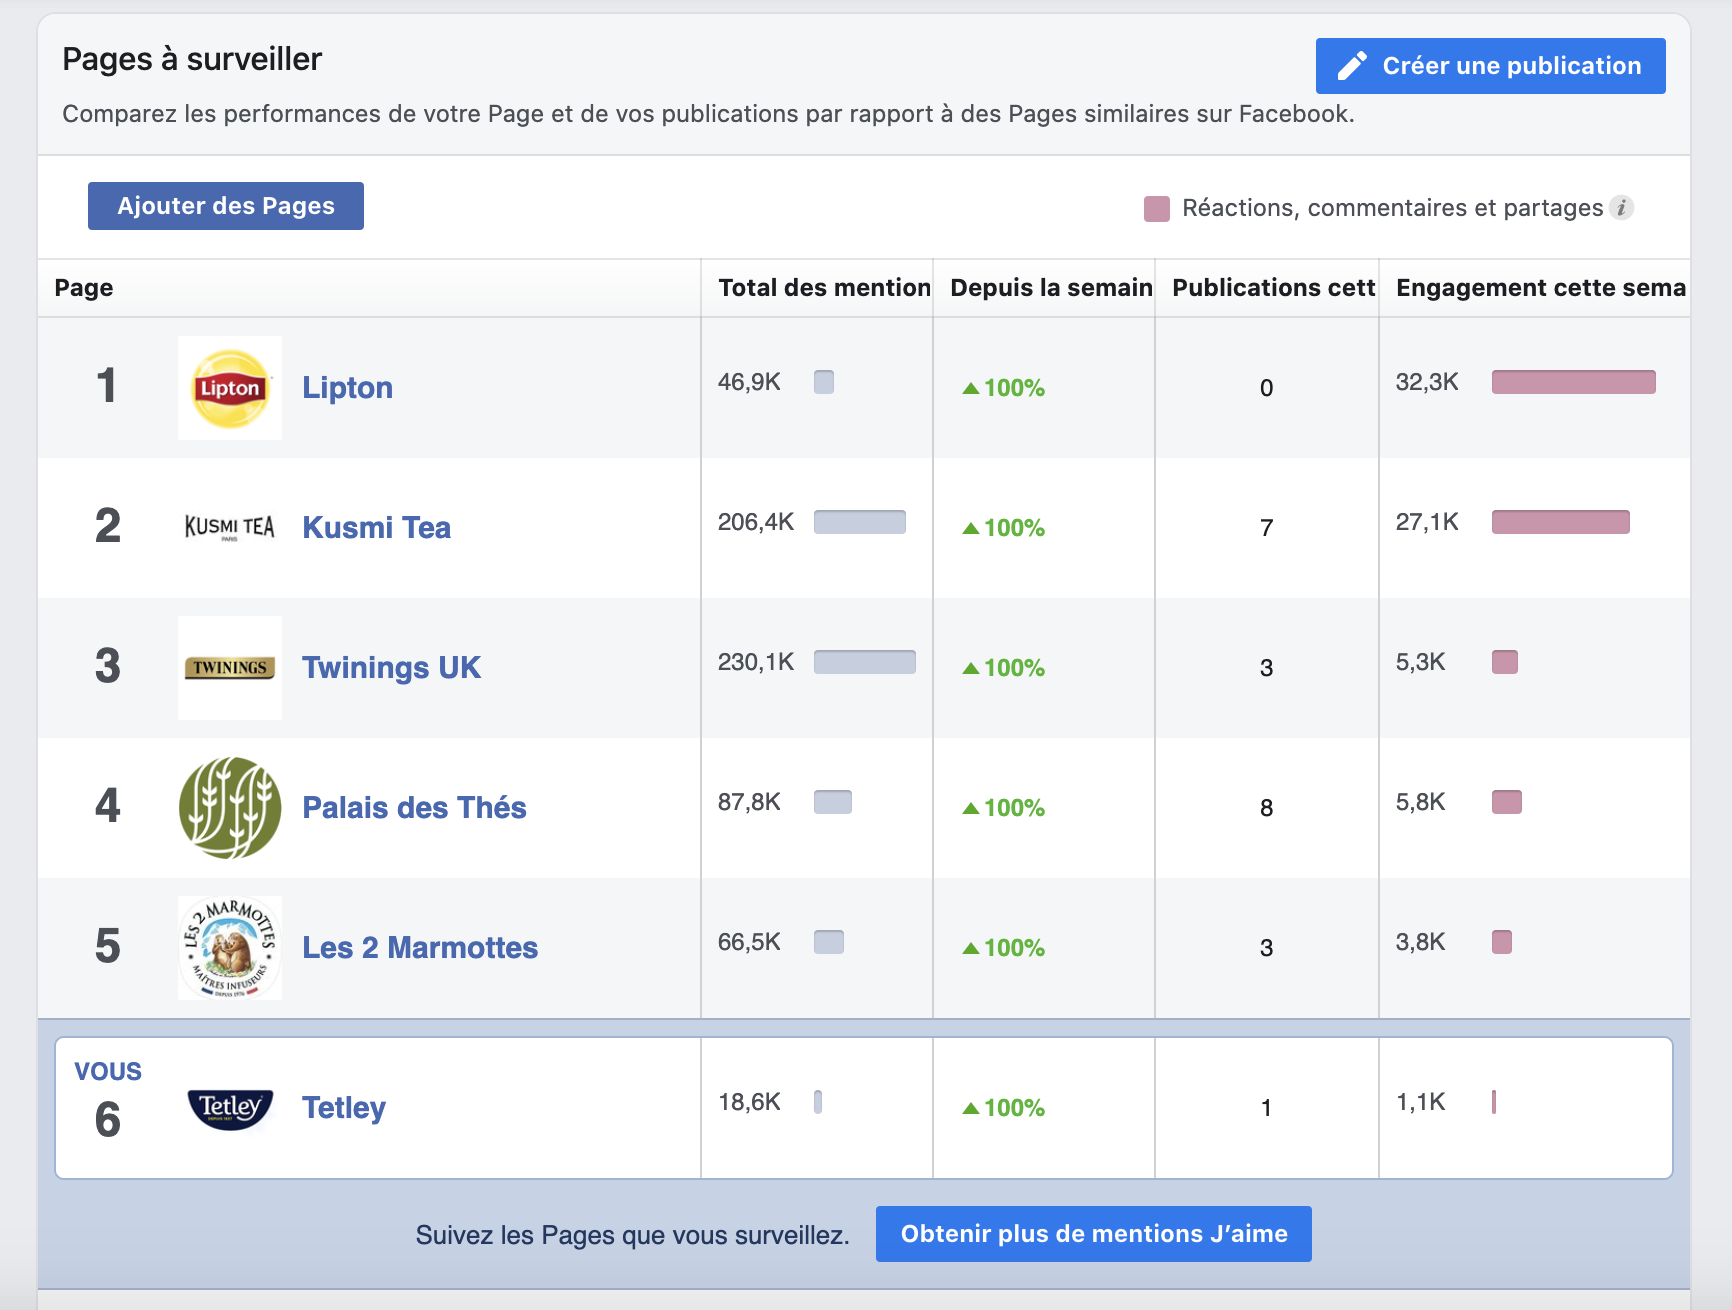 Dashboard de Facebook pour les “pages à surveiller” de la marque Tetley.